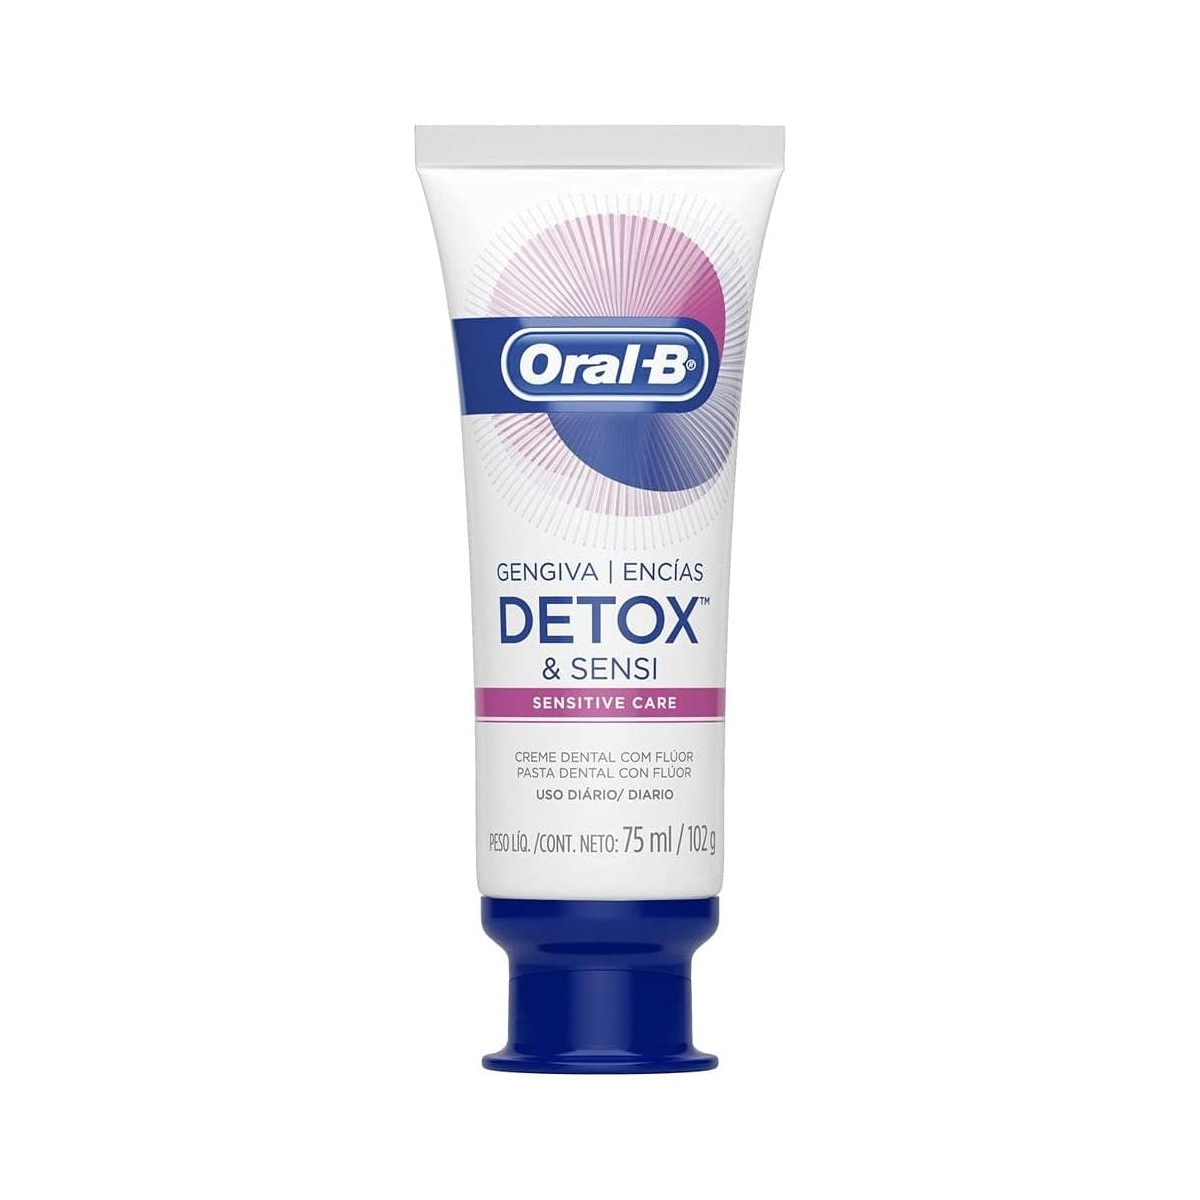 Creme Dental Oral-B Detox & Sensi 102g